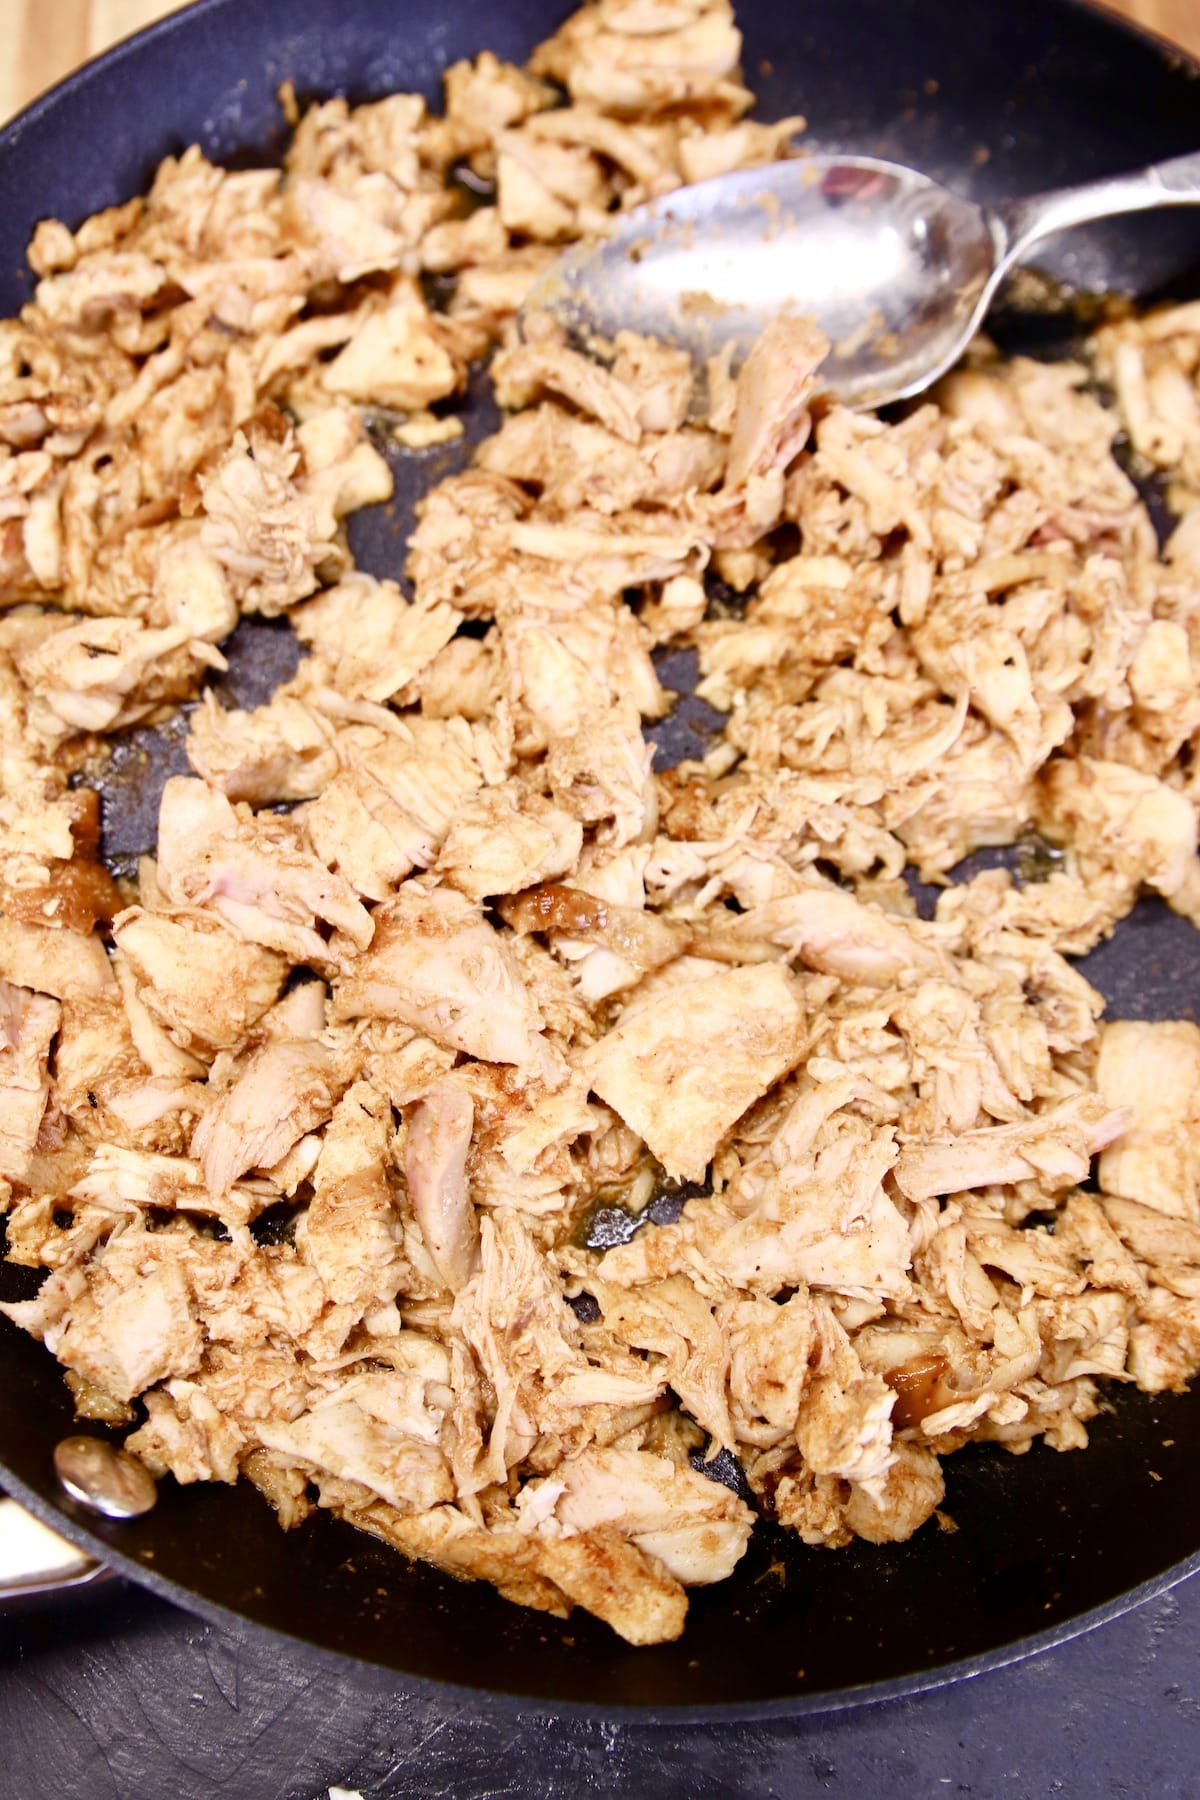 Seasoned shredded chicken in a skillet.